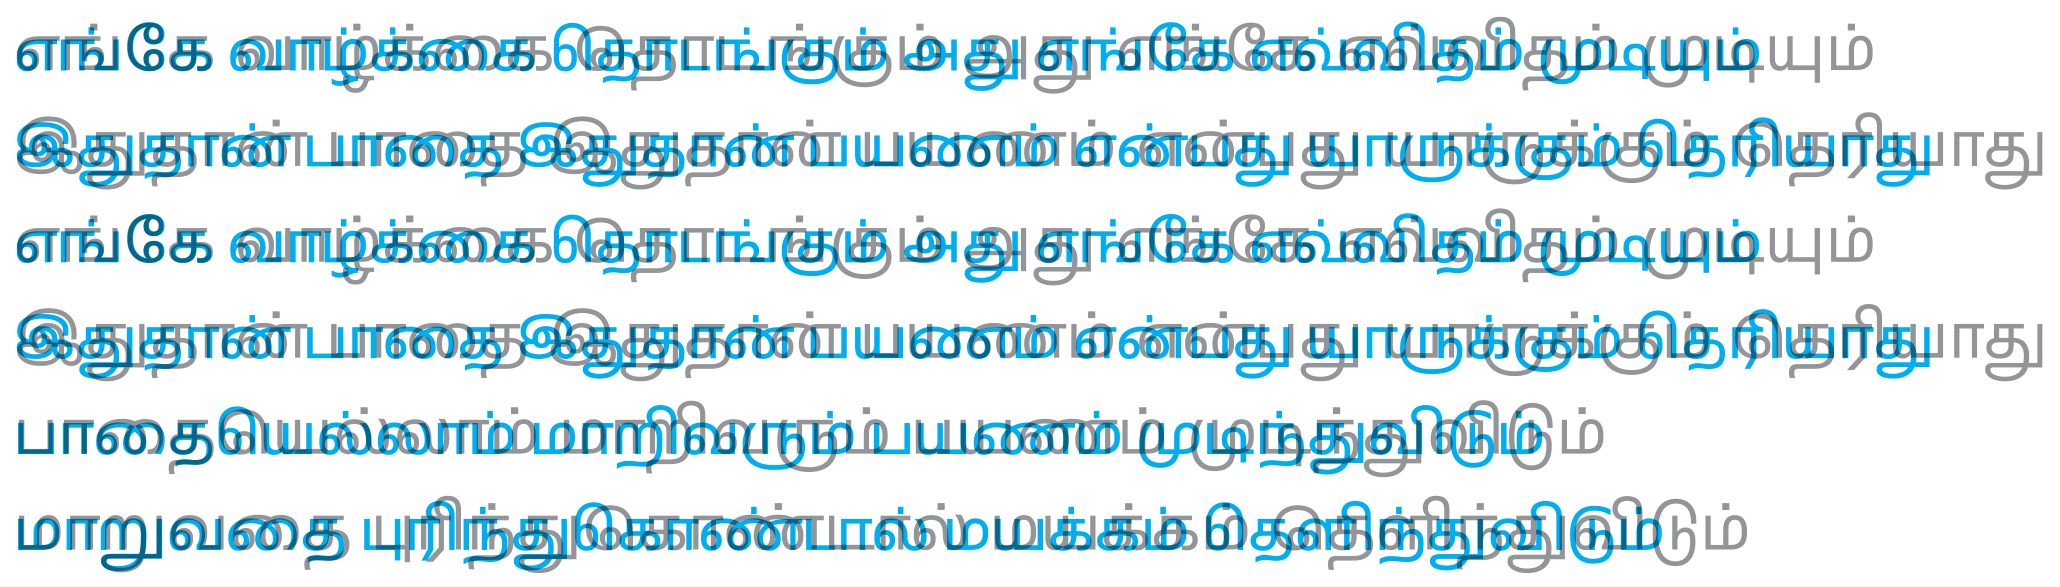 November Tamil (new vs old)